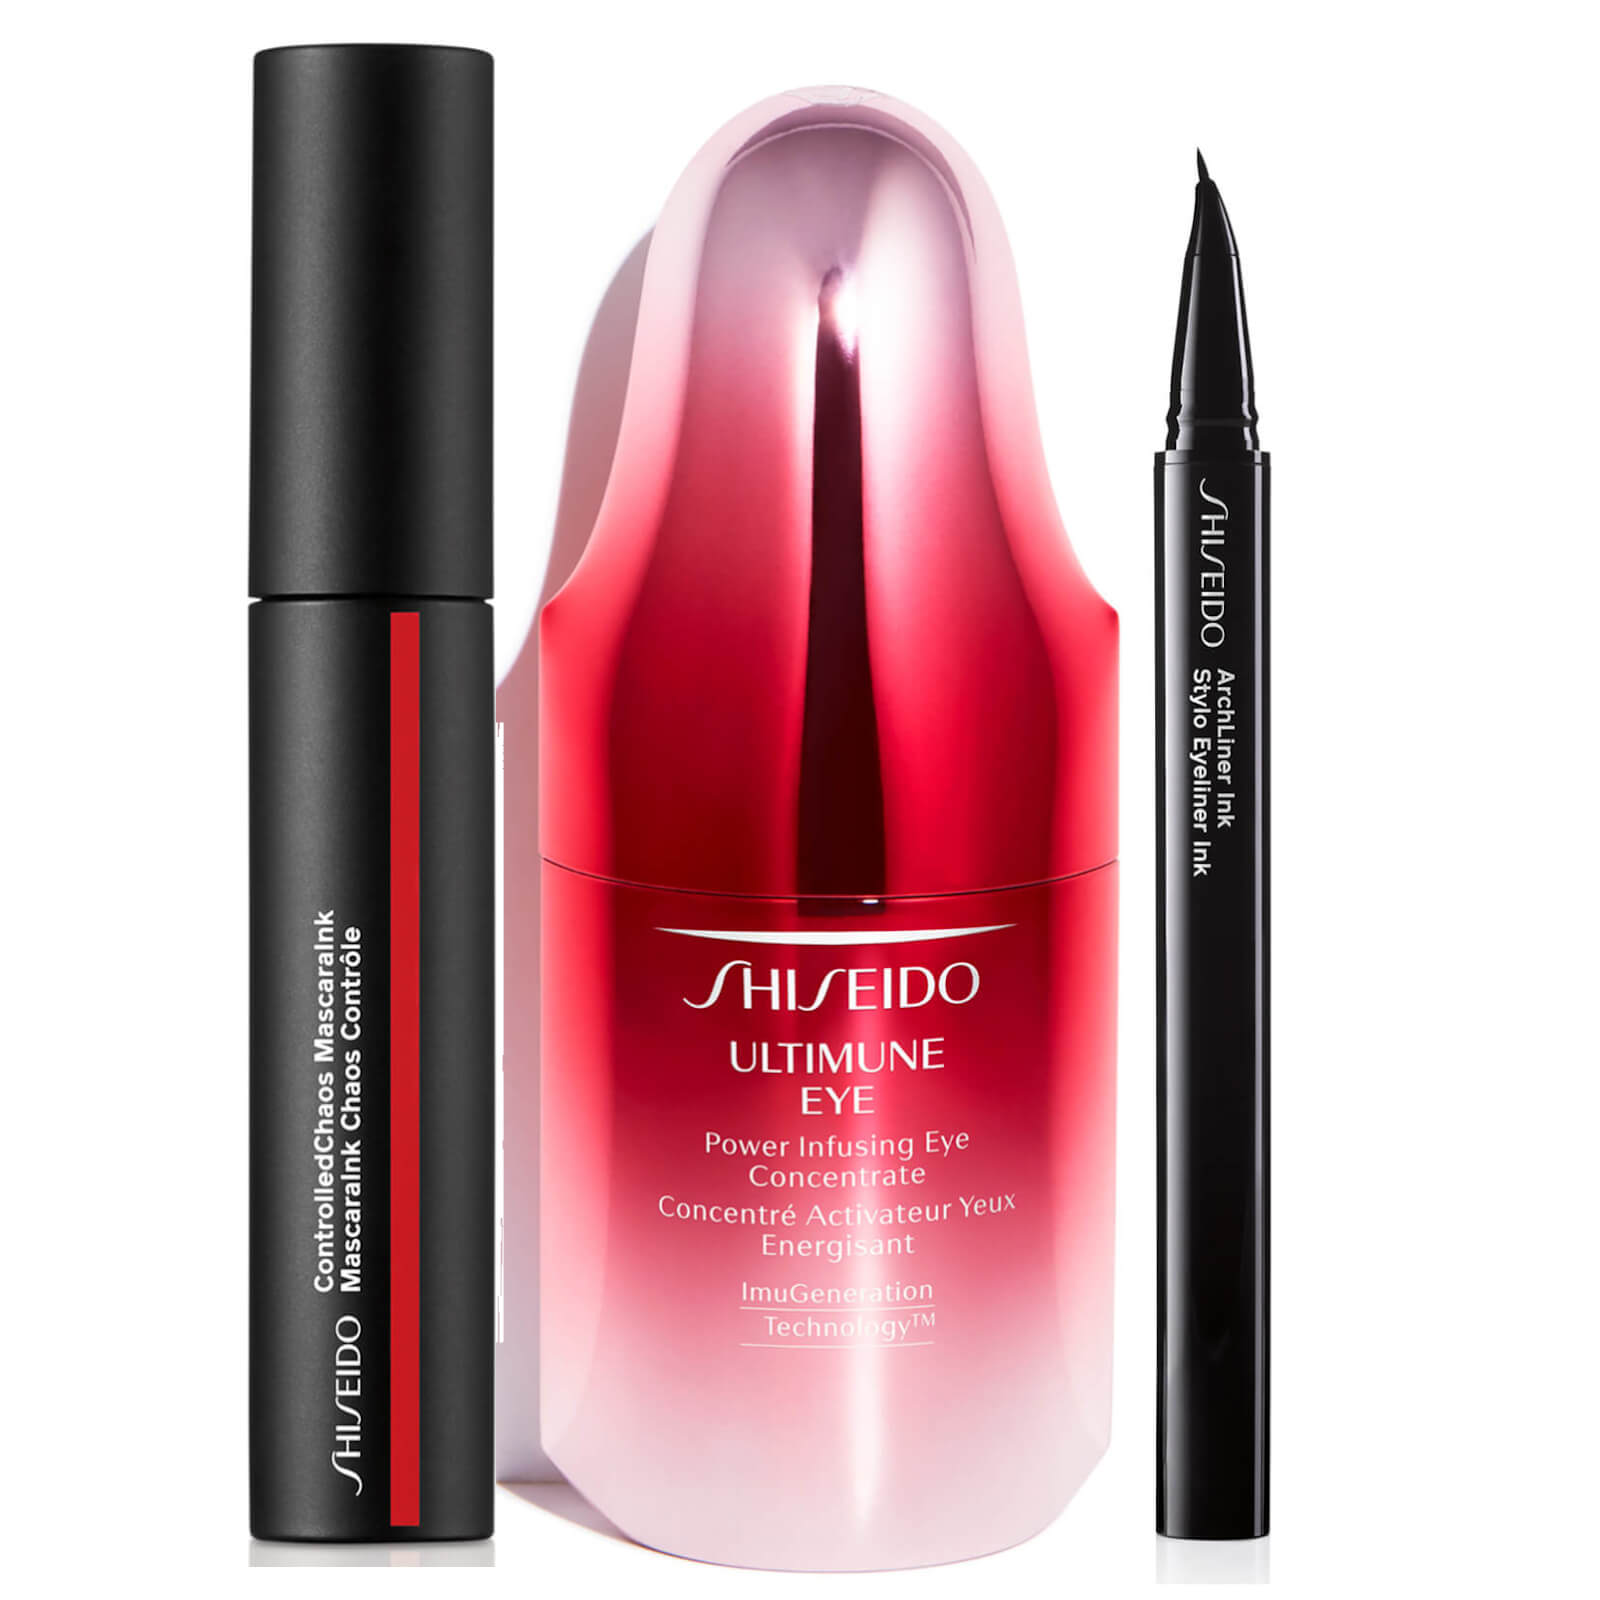 Shiseido Exclusive Ultimate Eye Makeup Set lookfantastic.com imagine